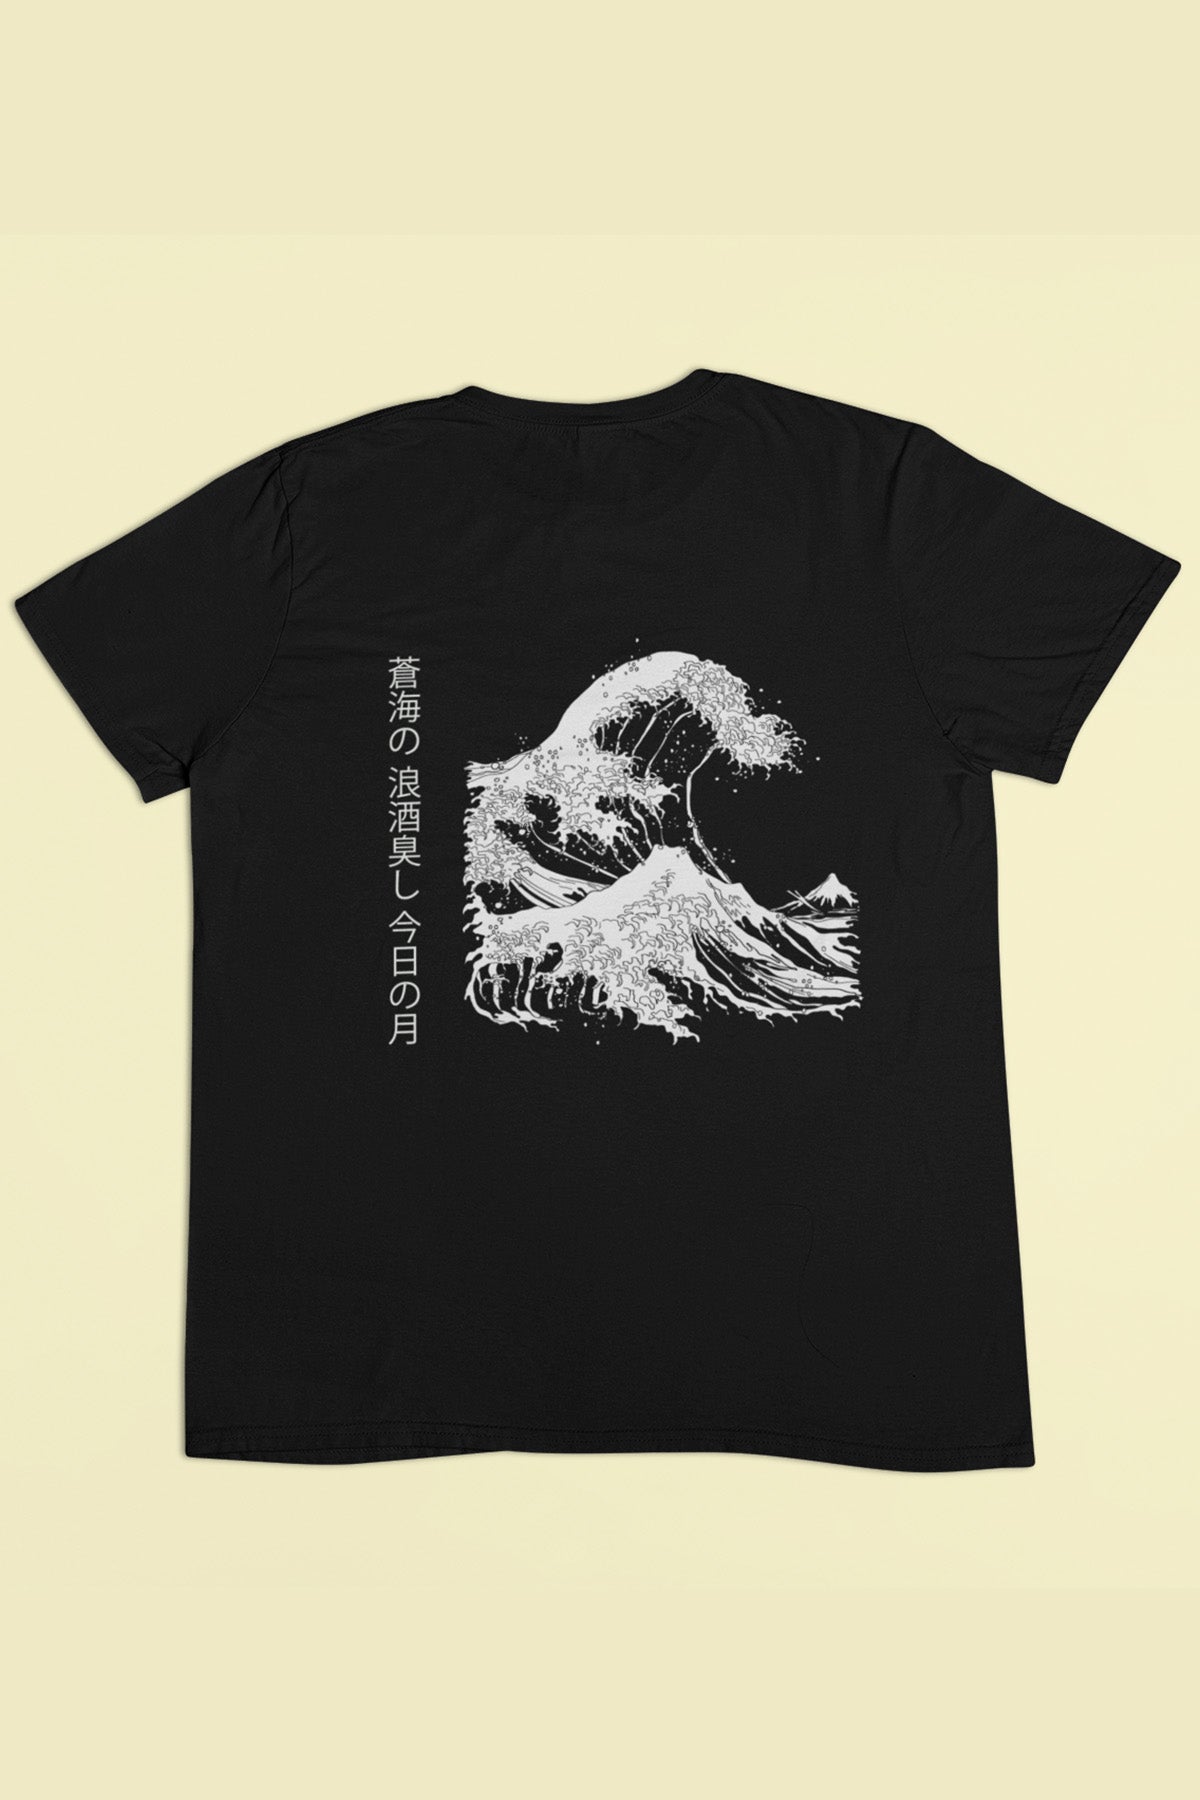 Sake Waves Men's T-Shirt